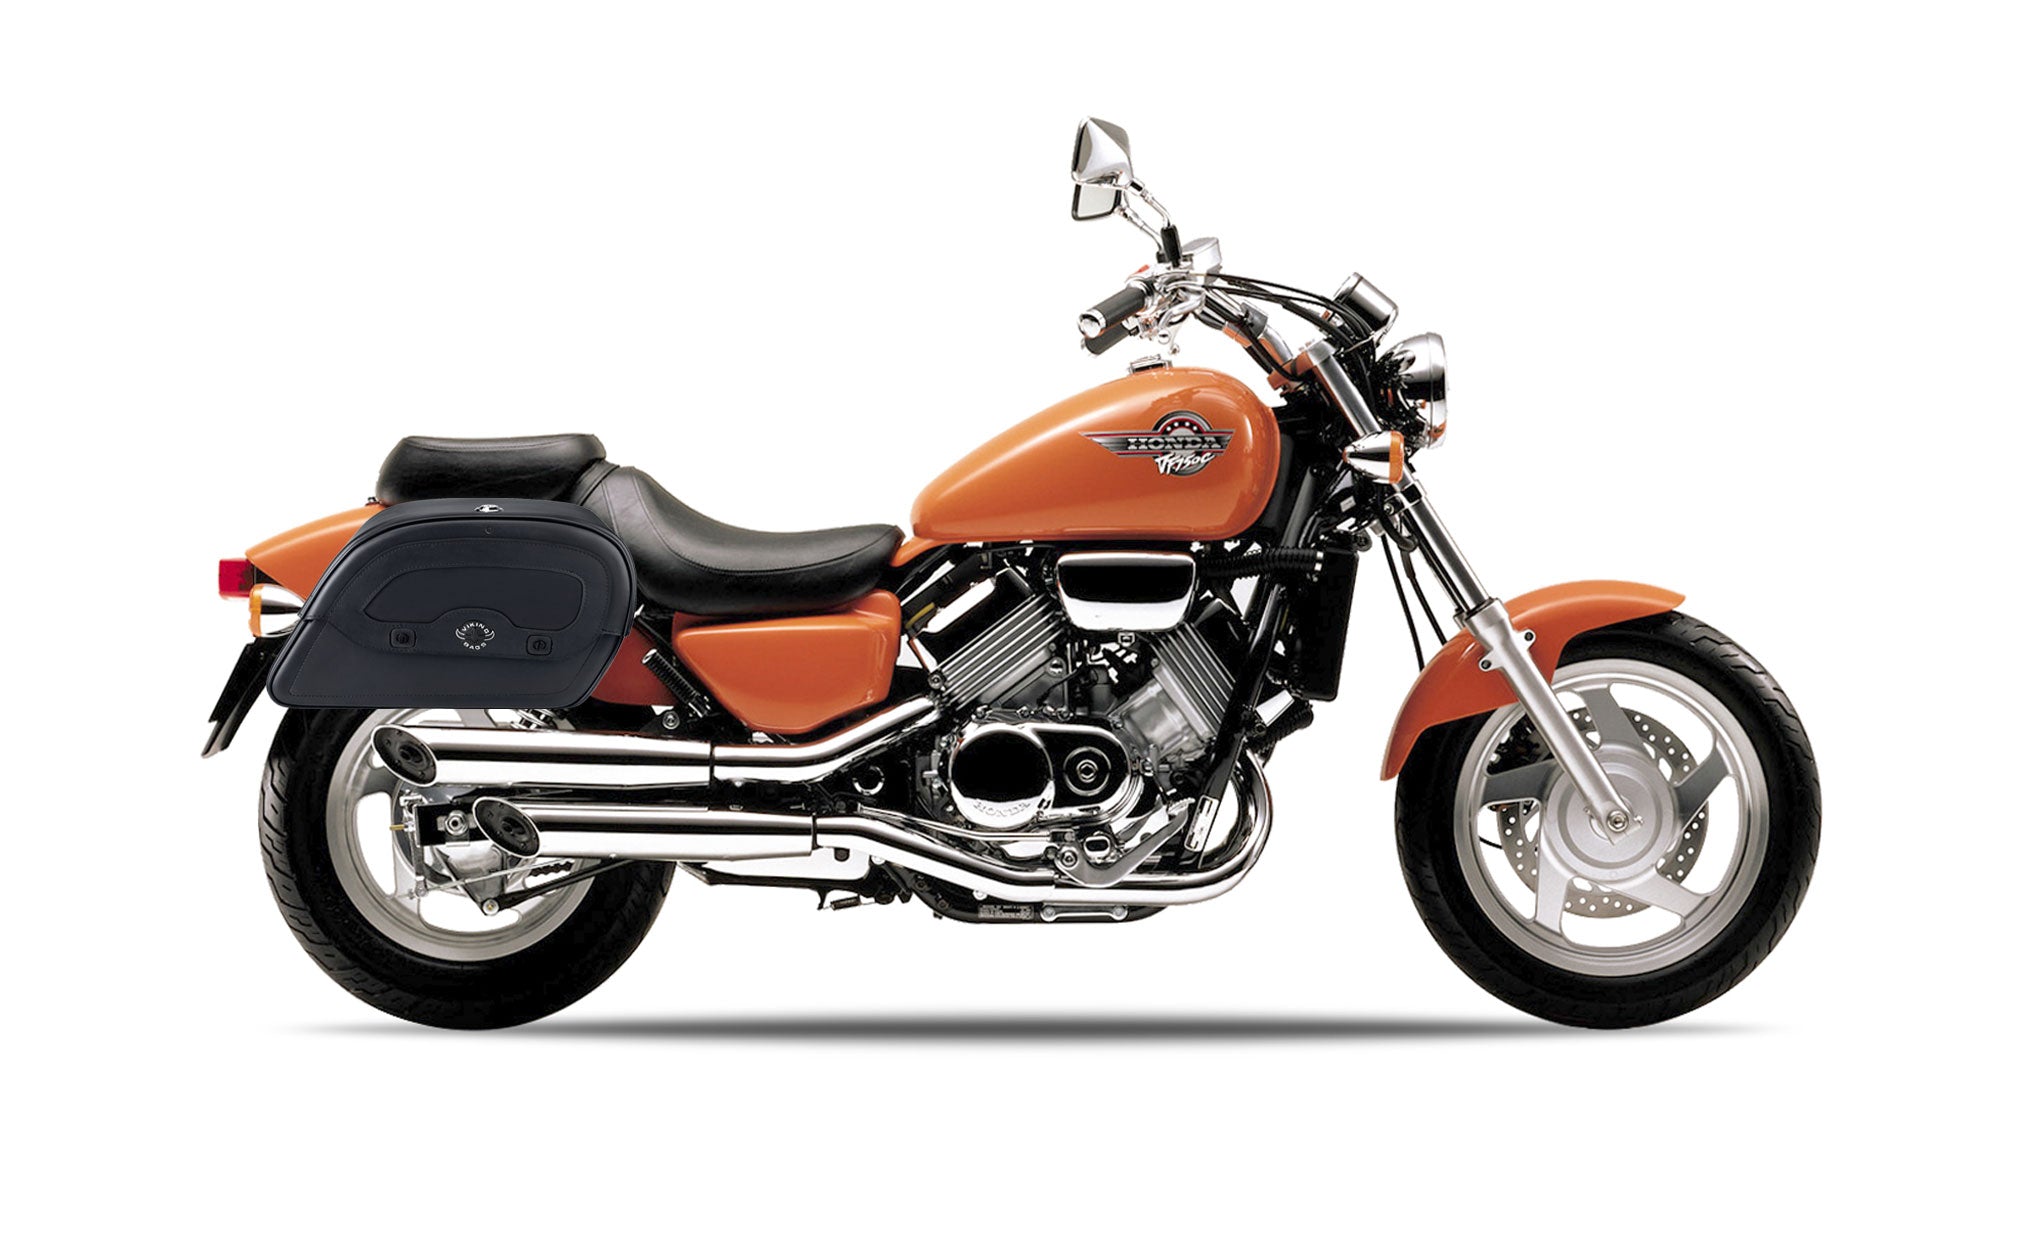 Viking Warrior Medium Honda Magna 750 Vf750C Leather Motorcycle Saddlebags on Bike Photo @expand